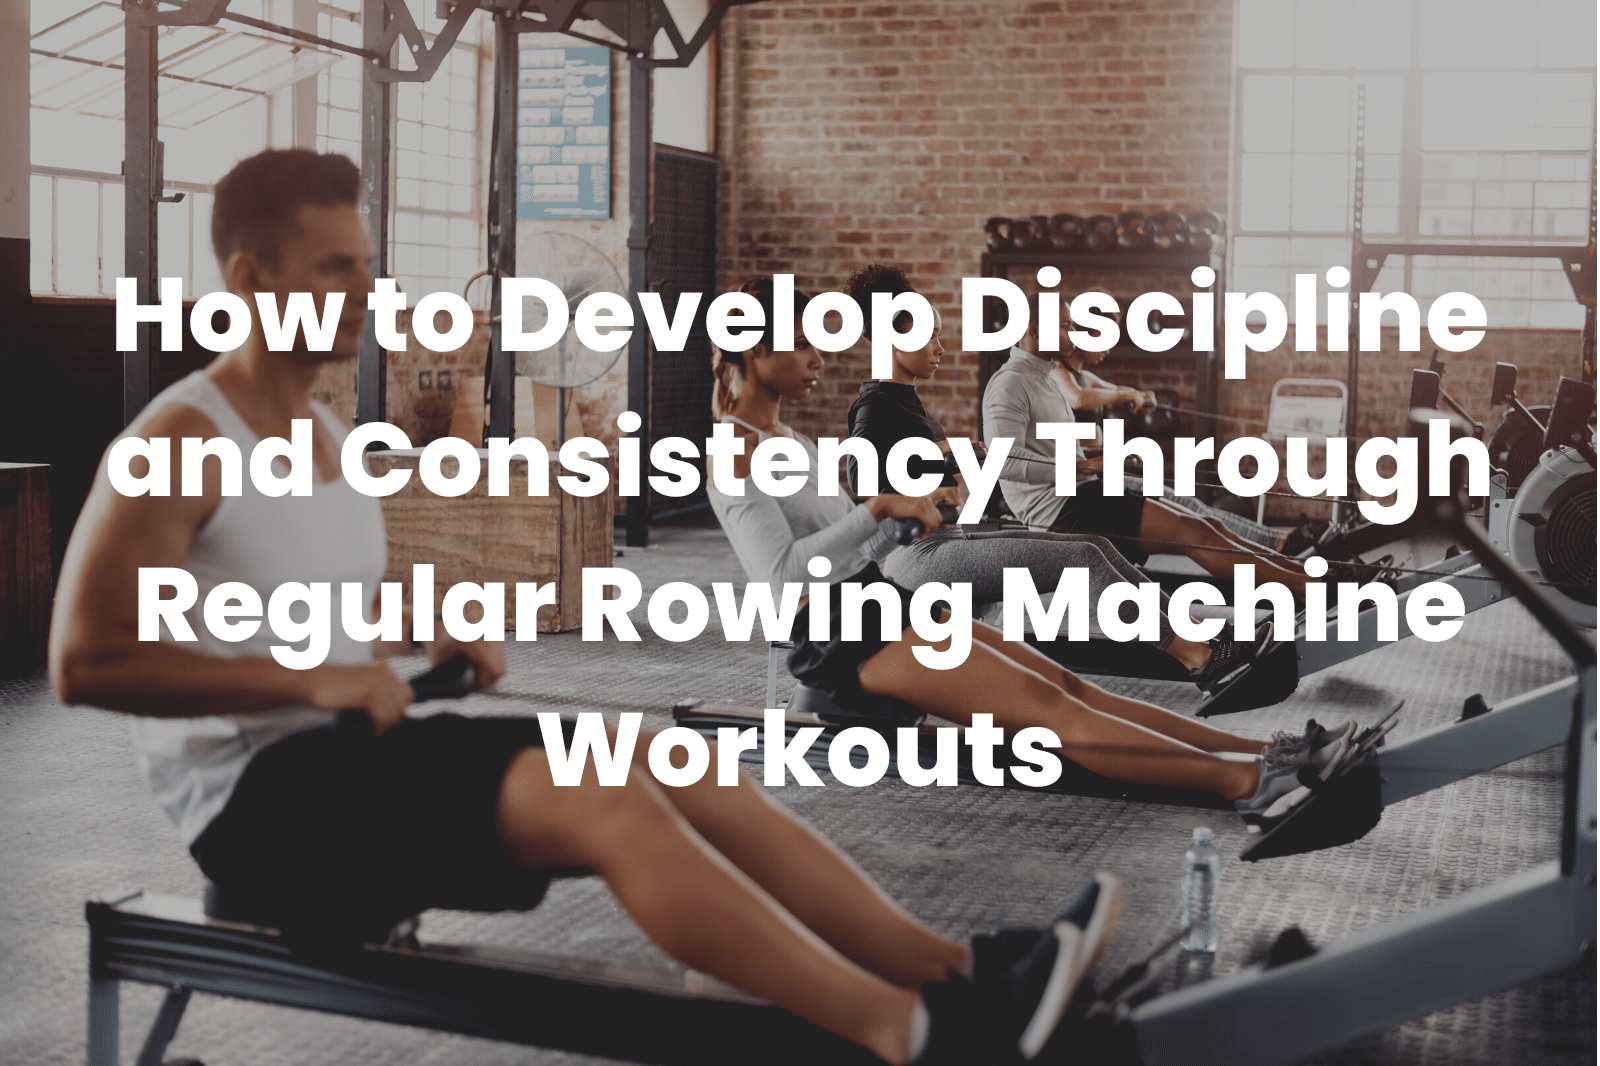 Regular Rowing Machine Workouts